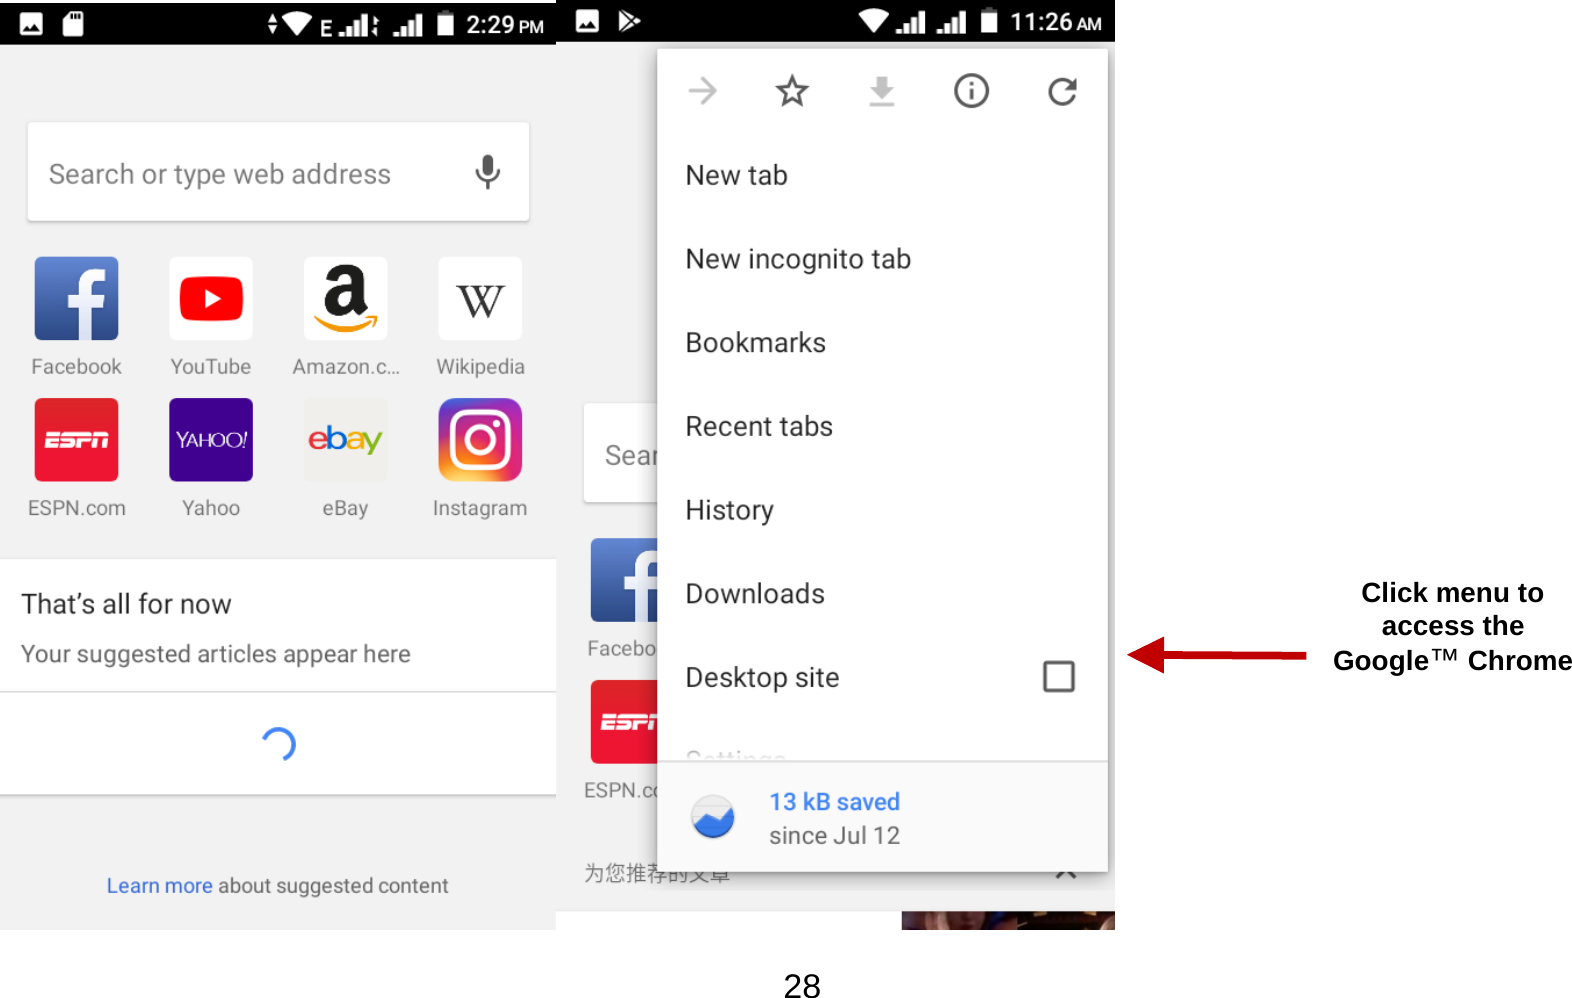   28  Click menu to access the Google™ Chrome 